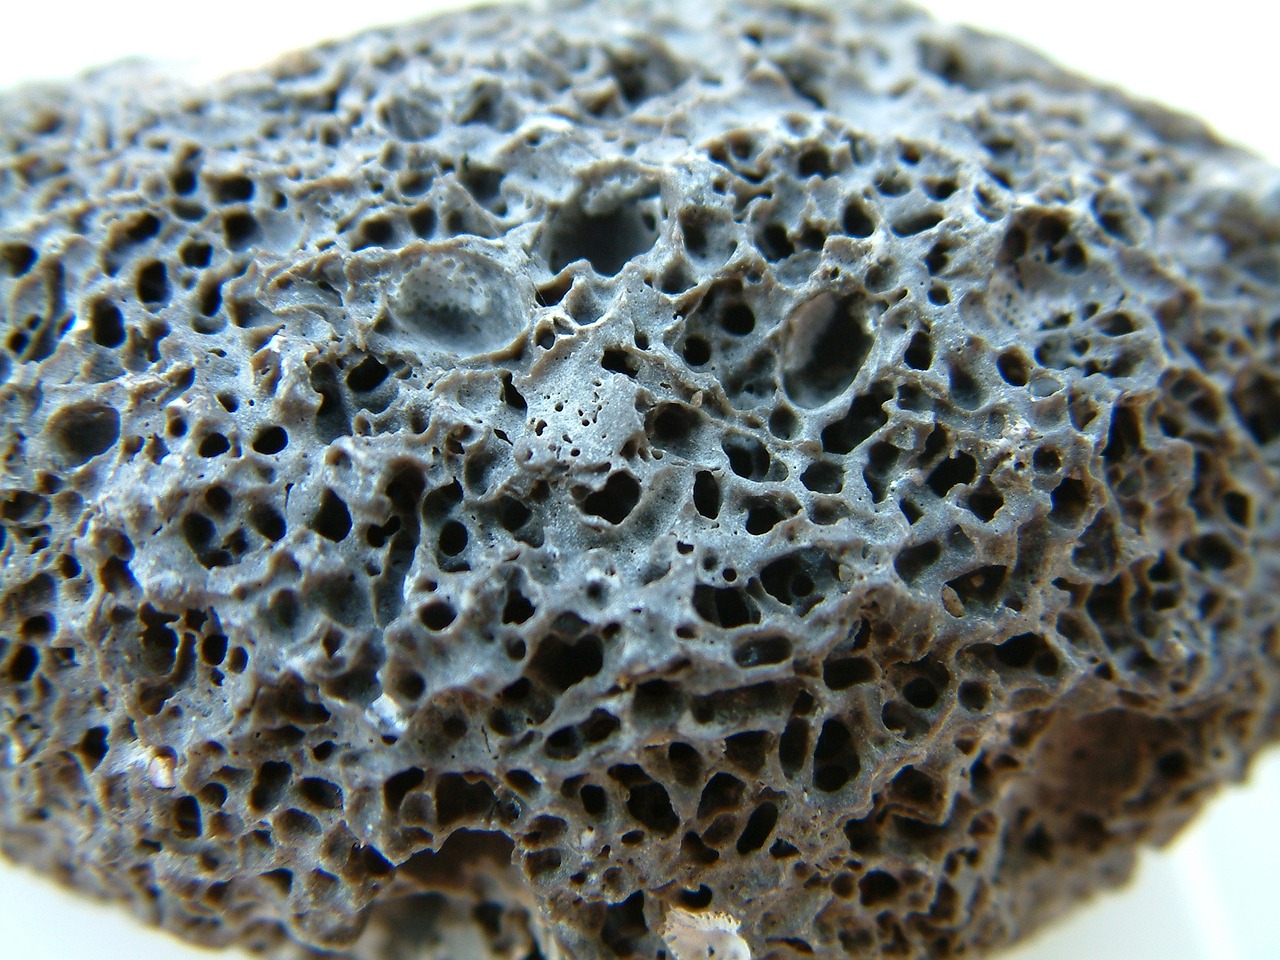 A graph-like porous rock